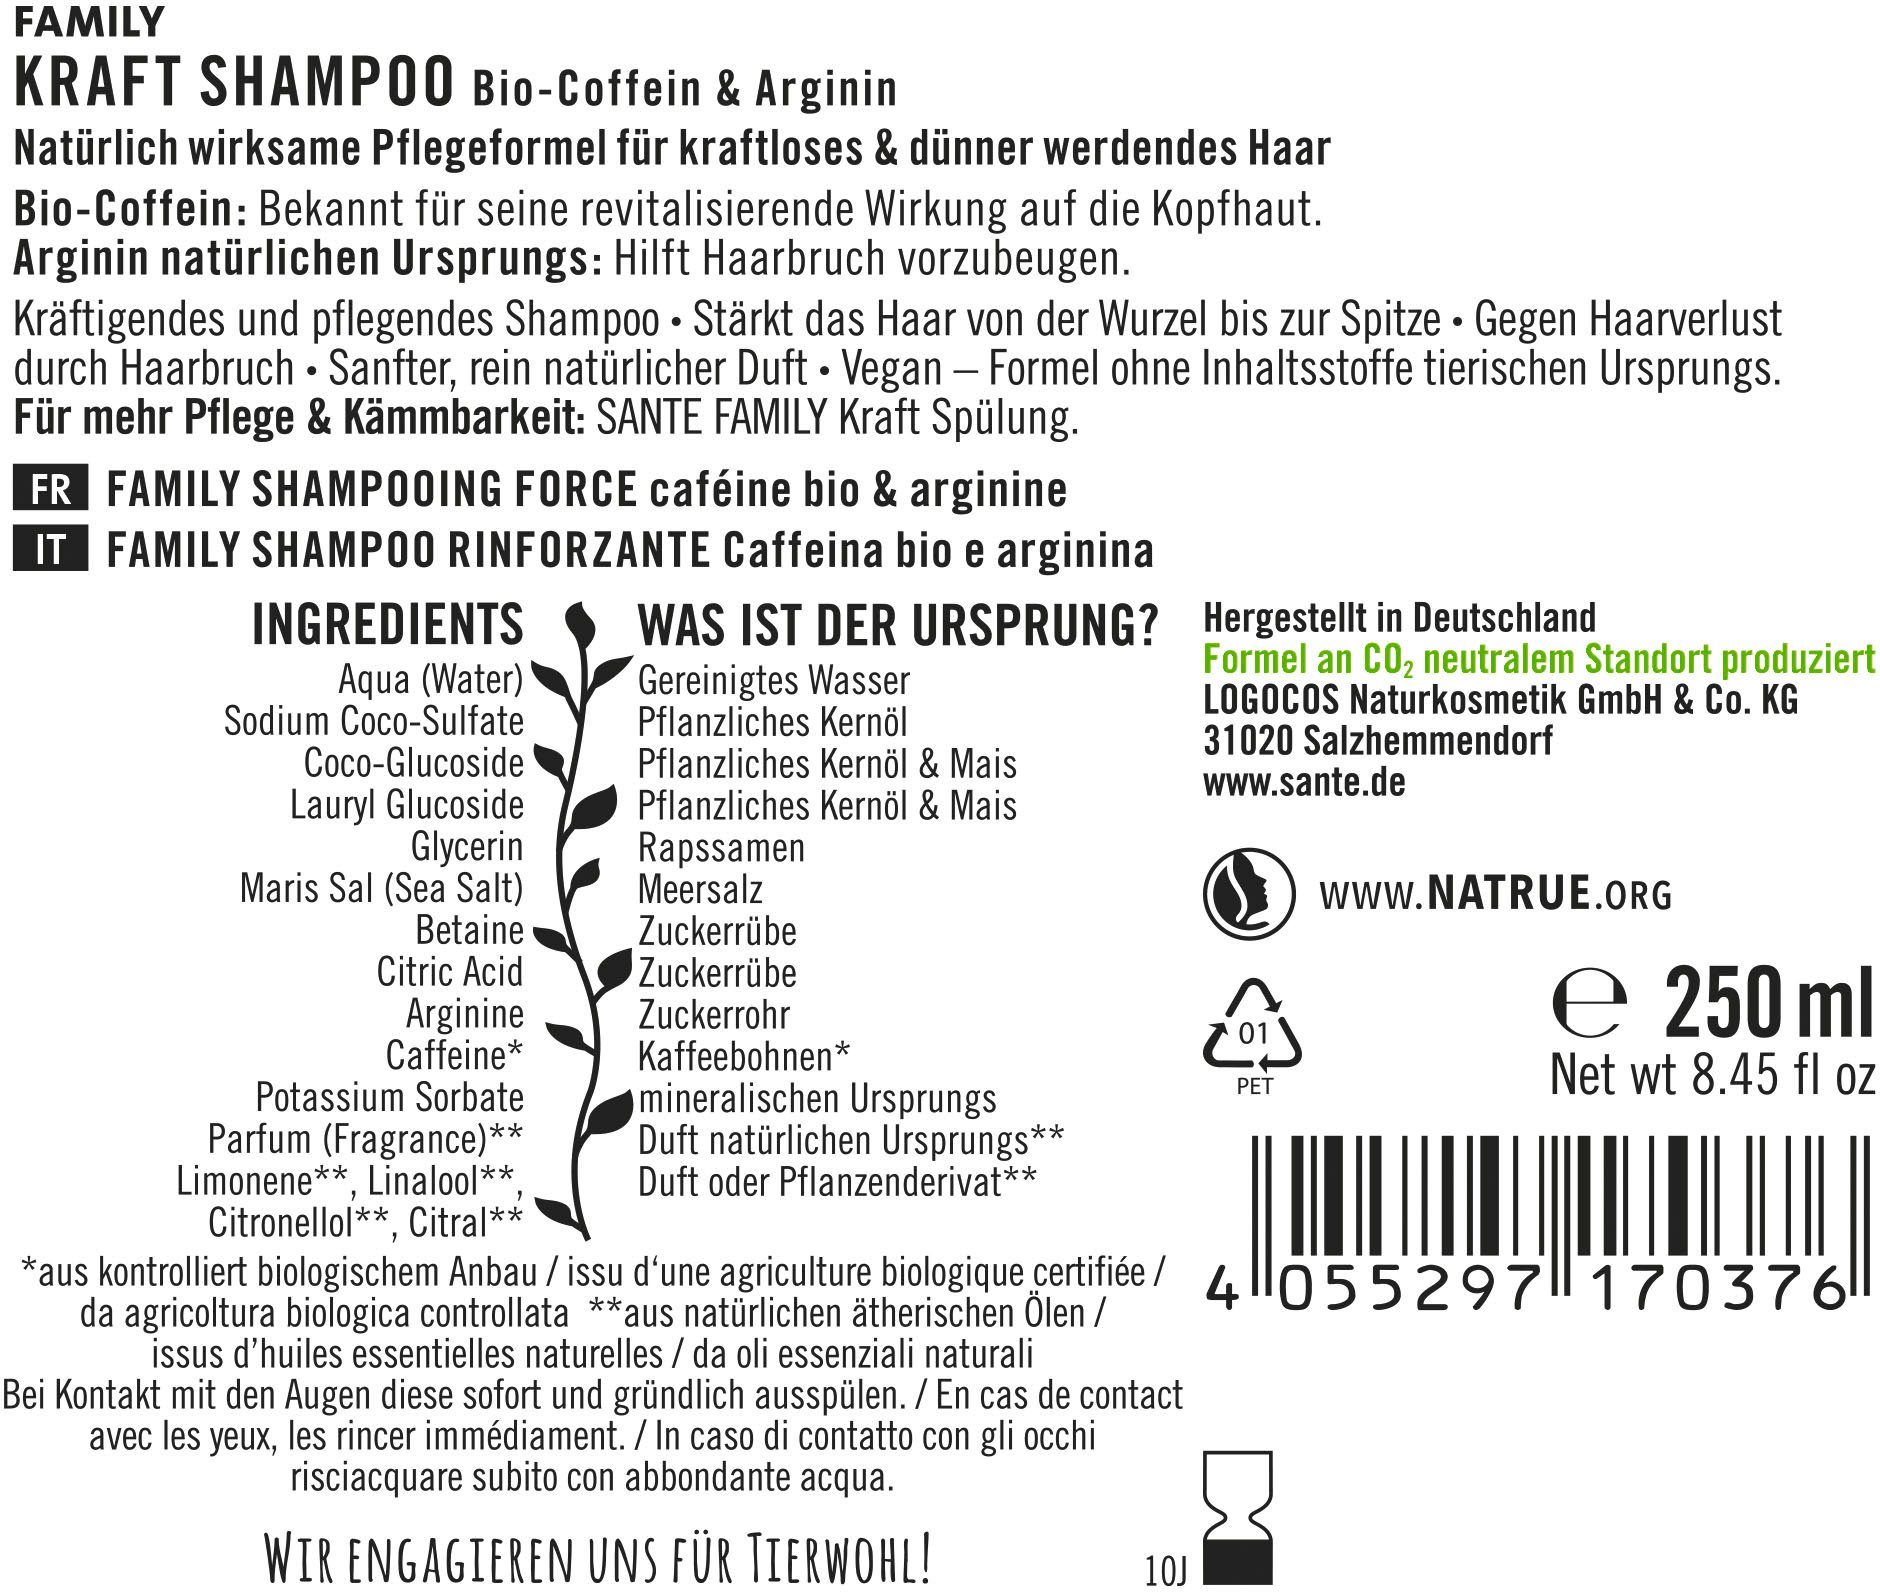 Haarshampoo Kraft Shampoo SANTE